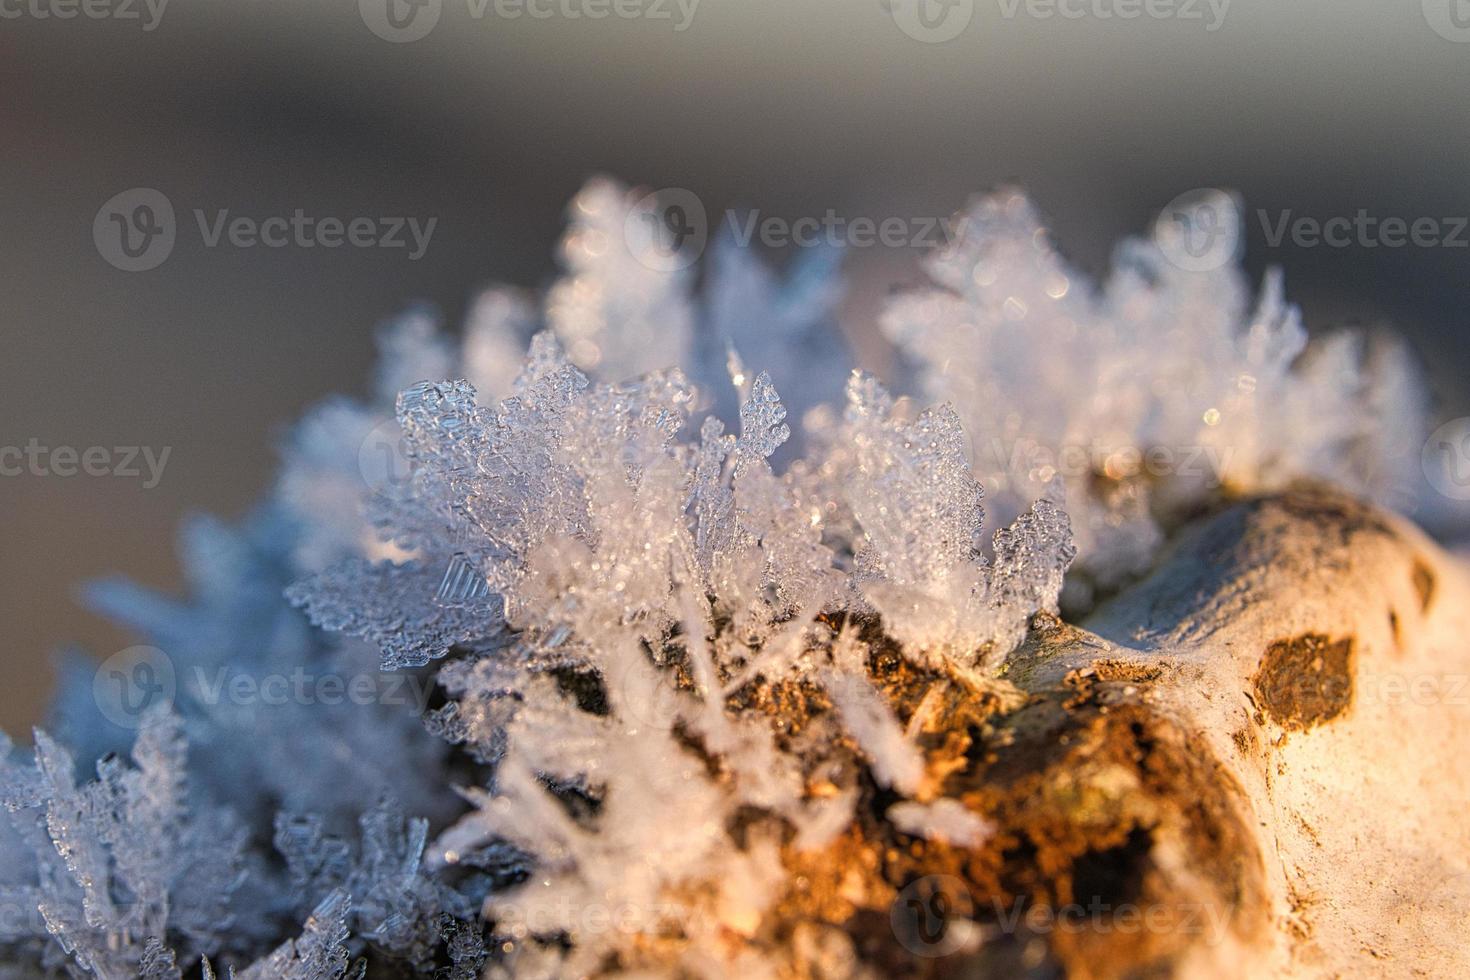 cristaux de glace qui se sont formés sur un tronc d'arbre et ont grandi. photo